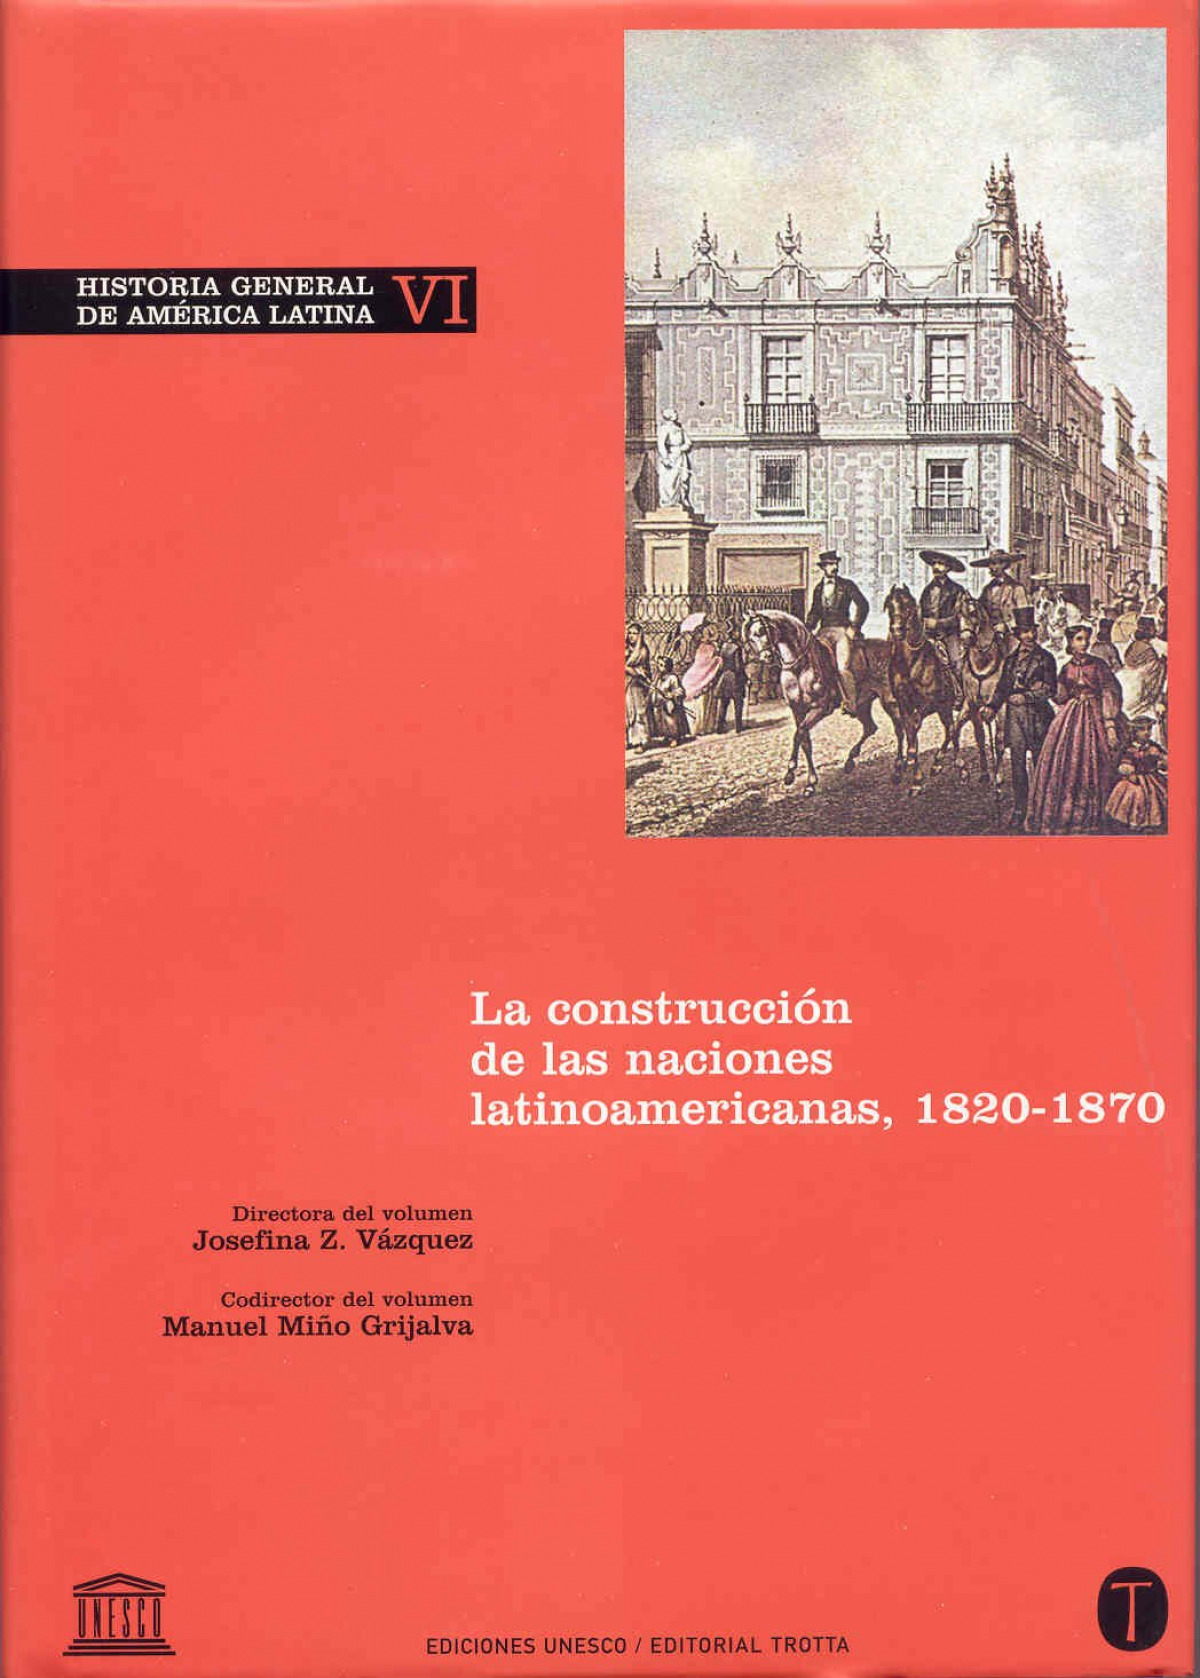 Historia General de América Latina Vol. VI La construcción de las naciones latinoamericanas - Vazquez, Josefina Z./Miño Grijalva, Manuel